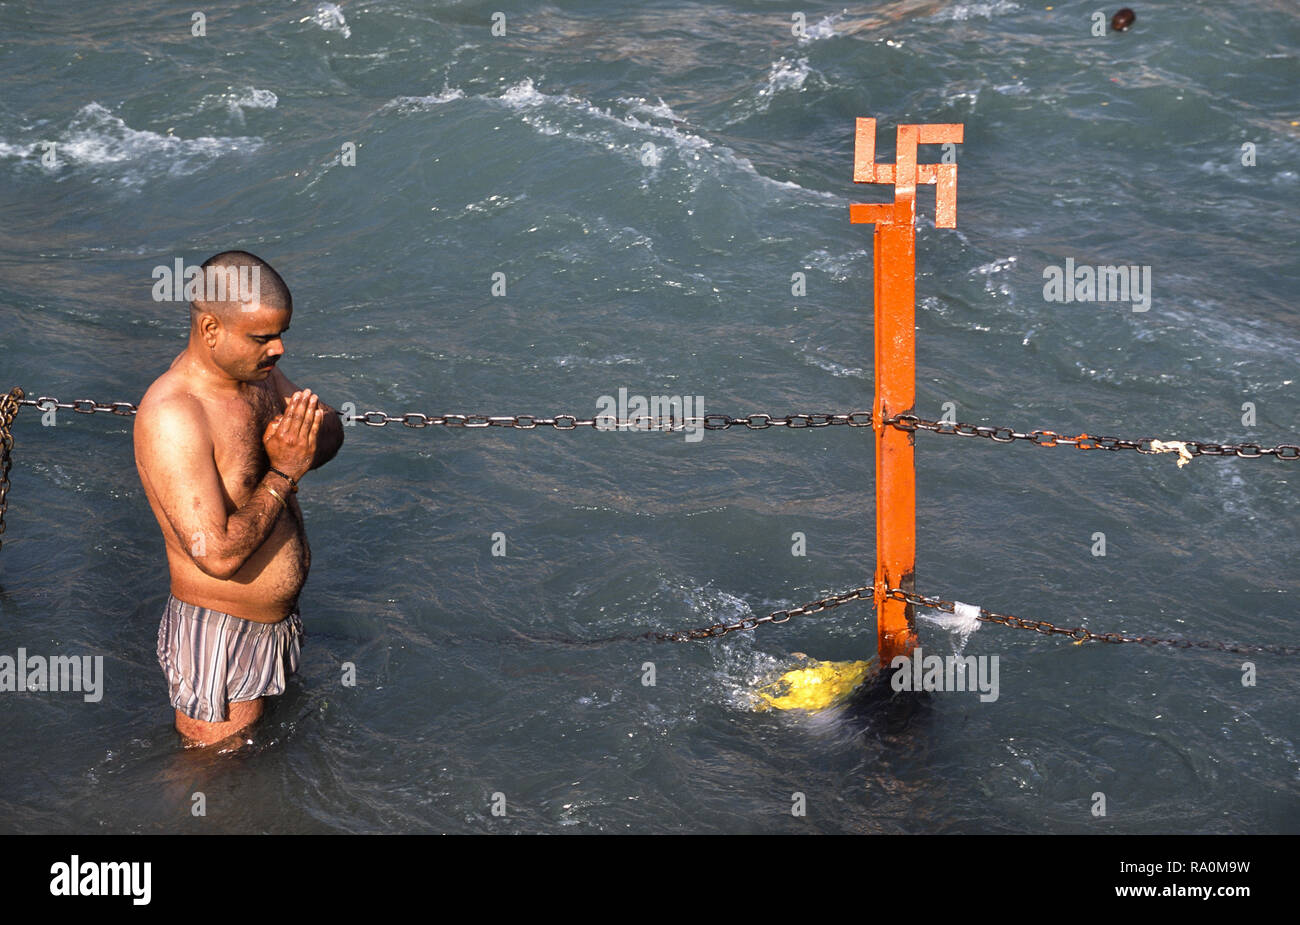 13.03.2010, Haridwar, Uttarakhand, Indien, Asien - Ein glaeubiger Hindu betet waehrend des religioesen Hindufestes Kumbh Mela im heiligen Fluss Ganges Stock Photo